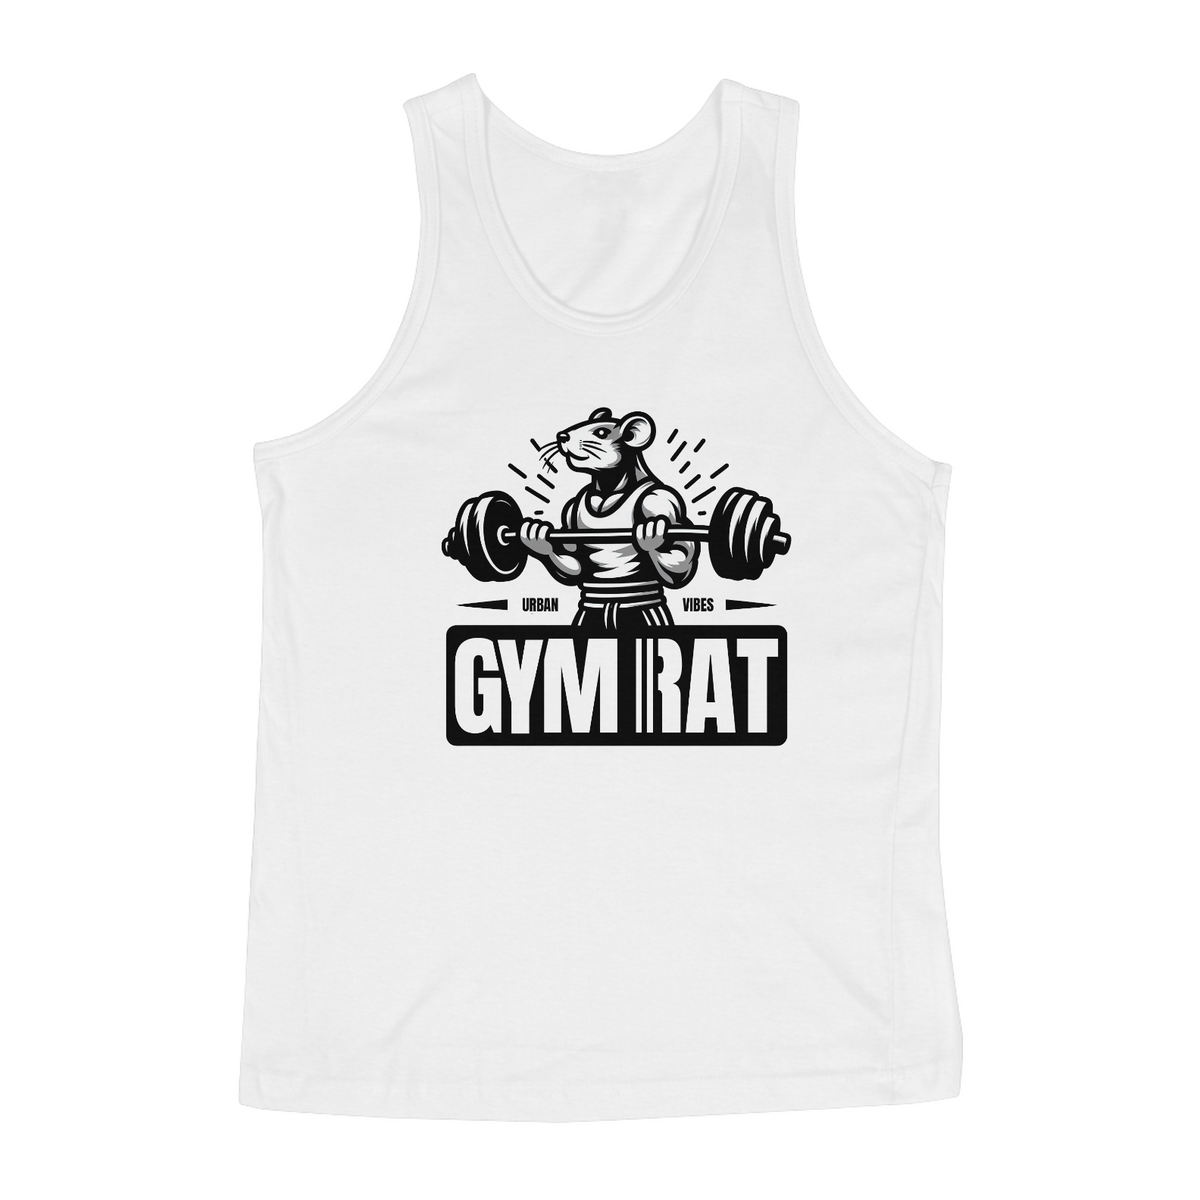 Nome do produto: Regata Academia - Gym Rat oficial